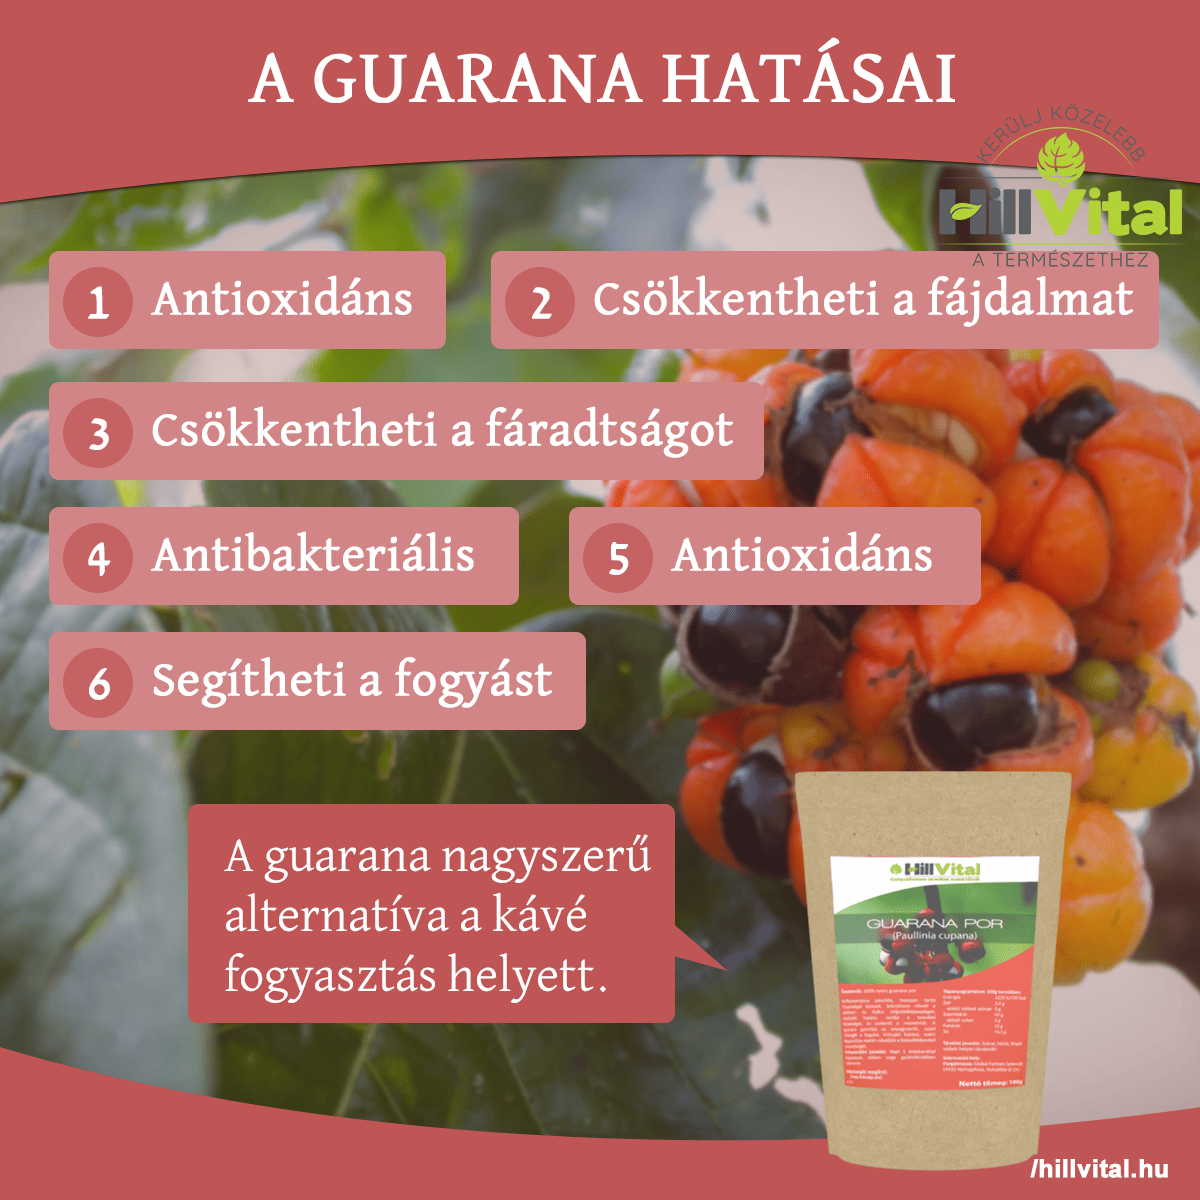 A guarana nagyszerű lehet kávé helyett!